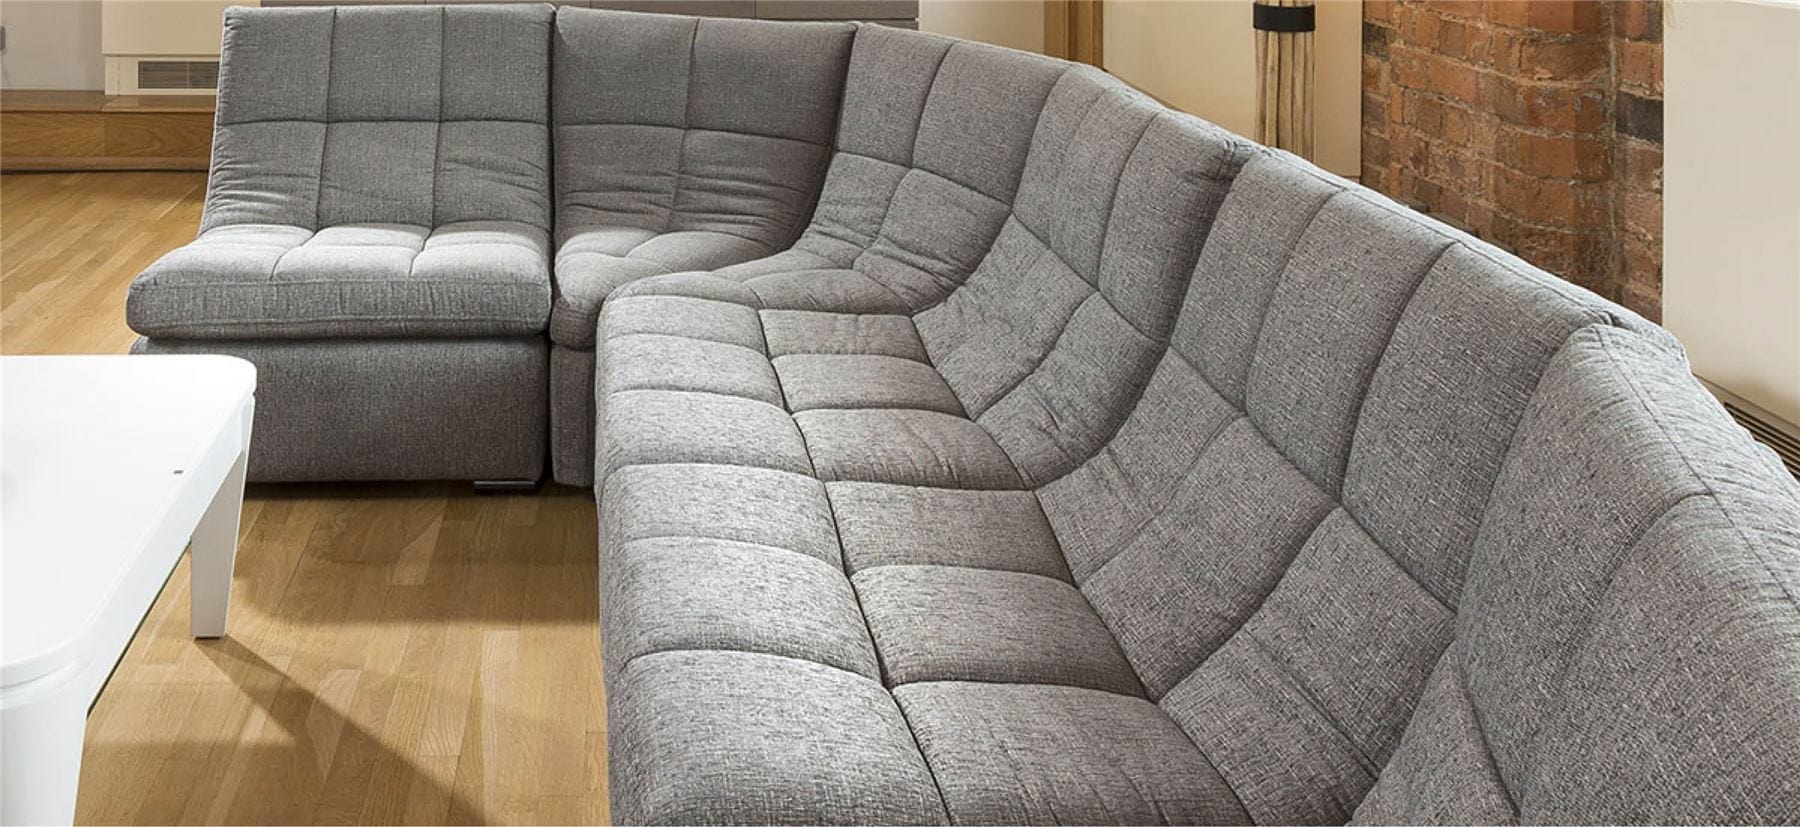 Quatropi Quatropi Designer Relax Range U Shaped Sofa Luxury 6 Seater U3